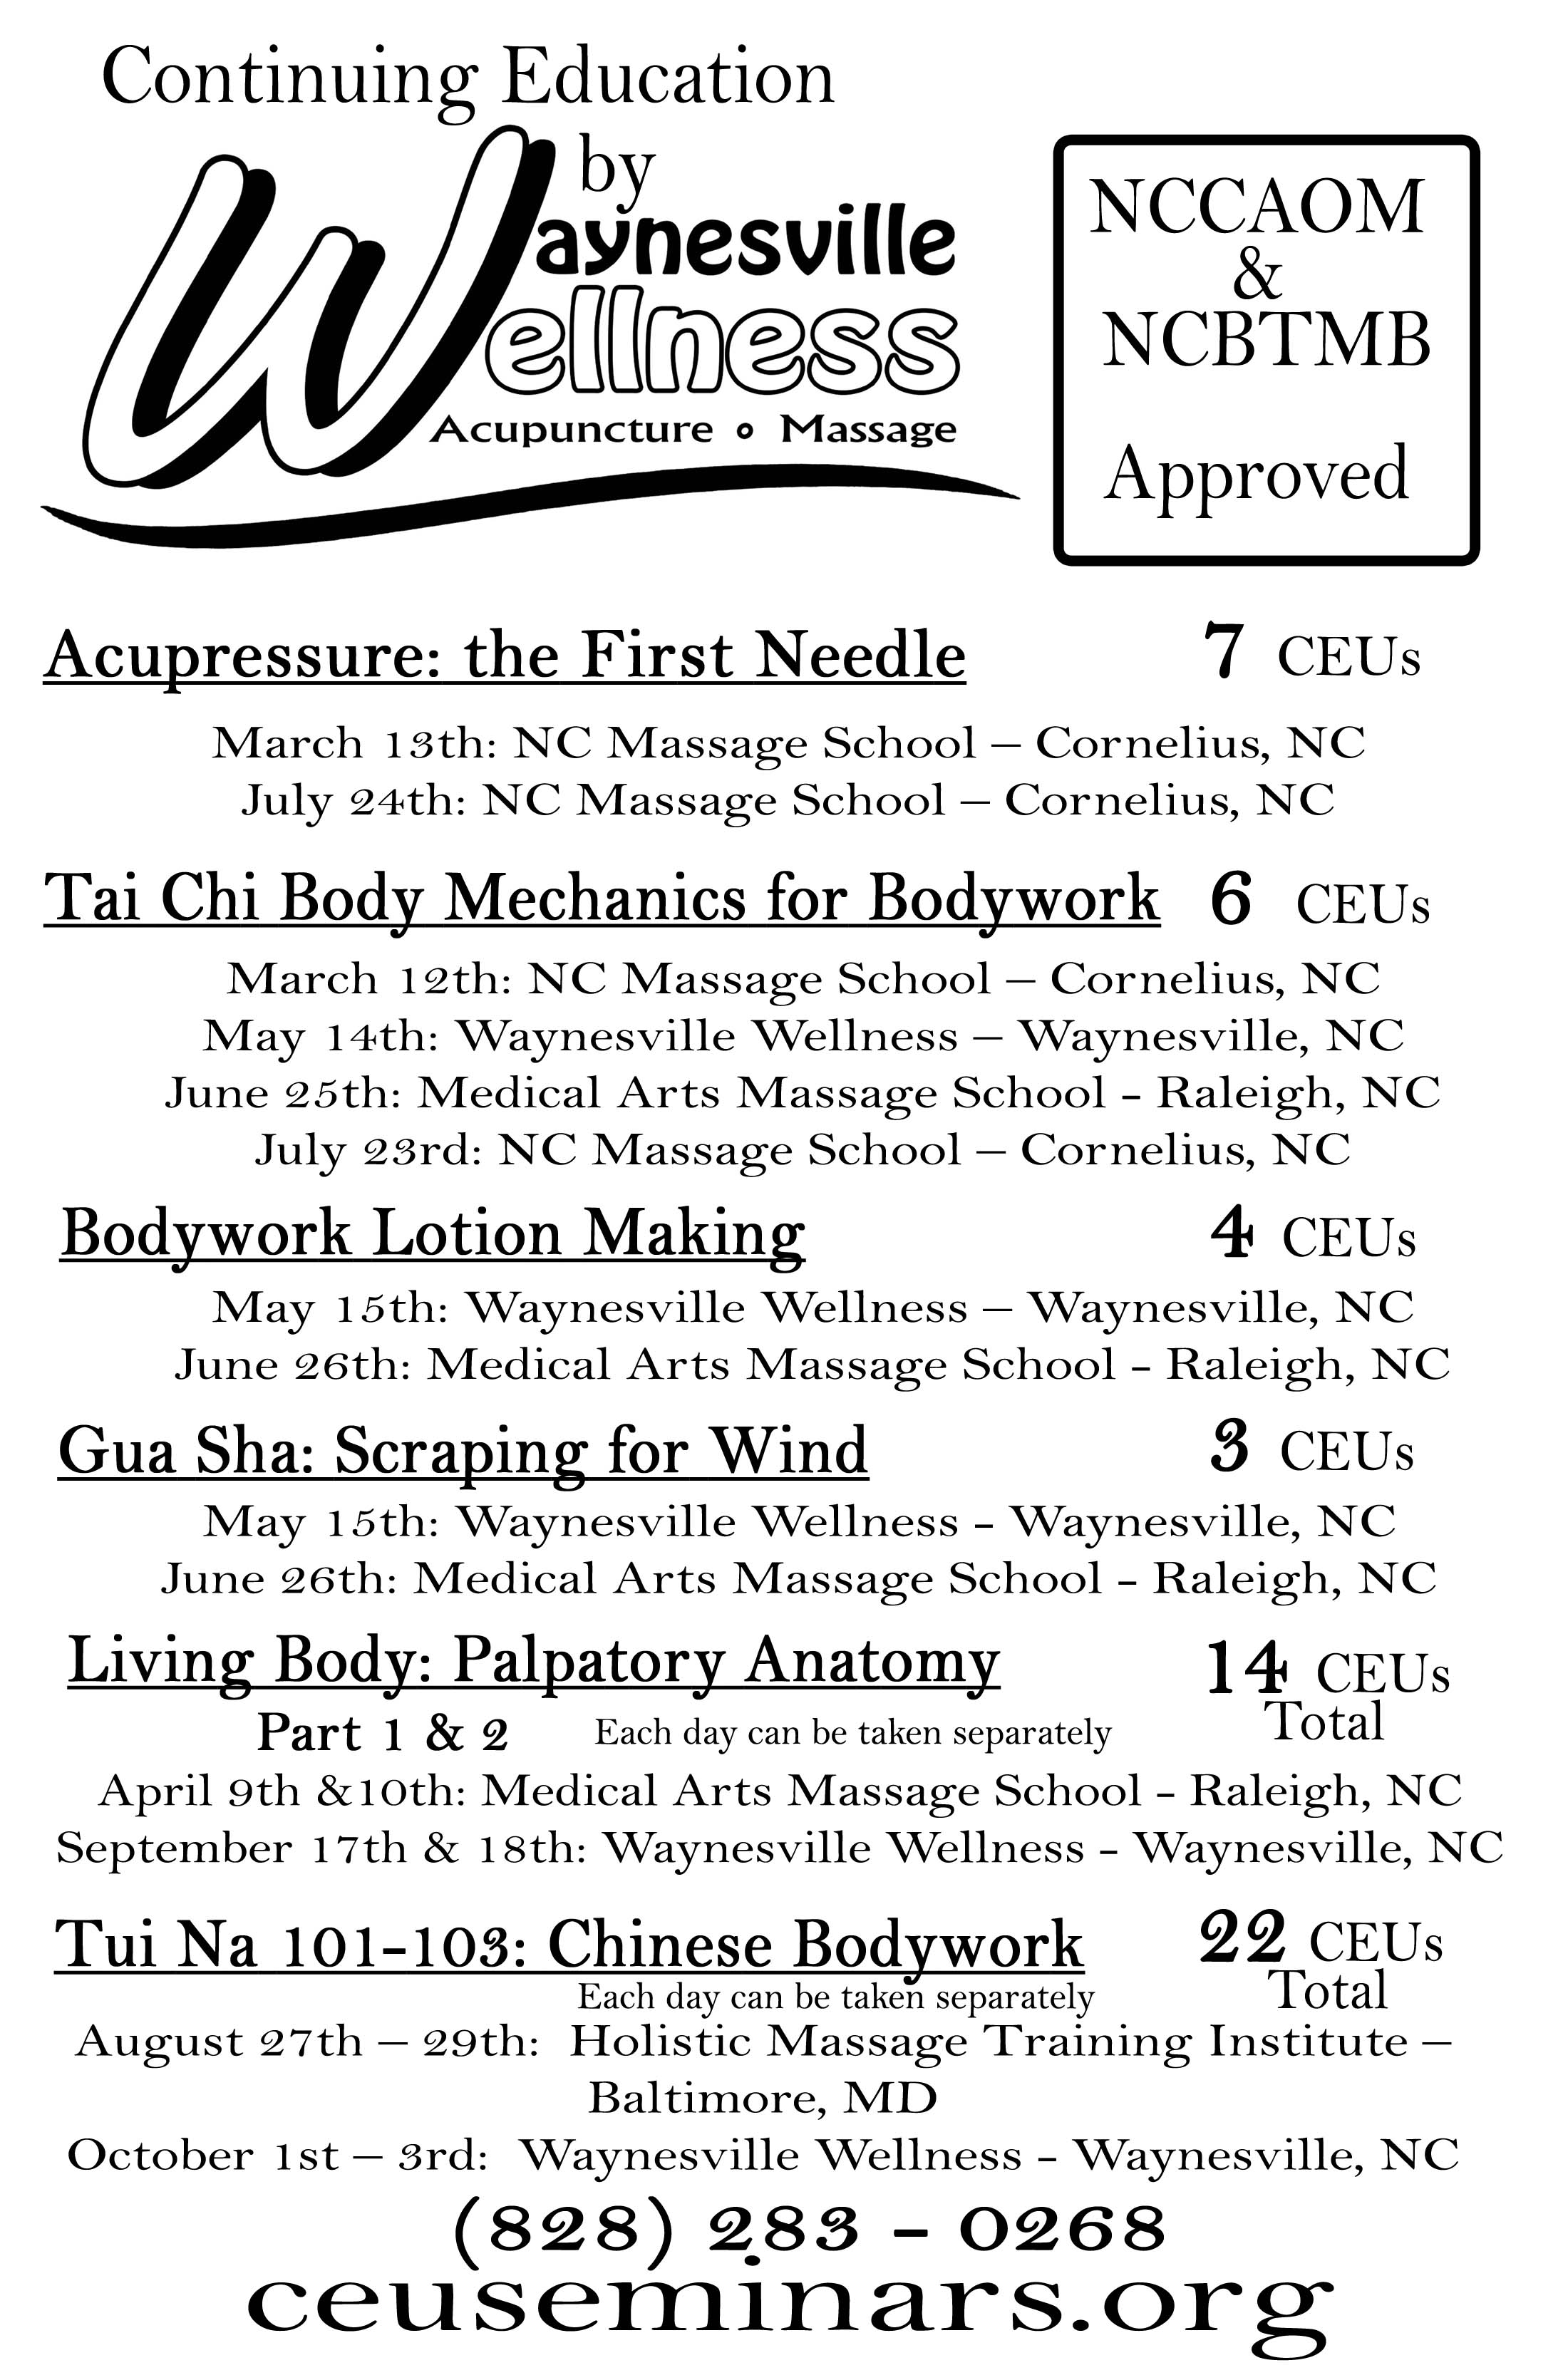 Waynesville Wellness Acupuncture & Massage CE / CEU / PDA Schedule